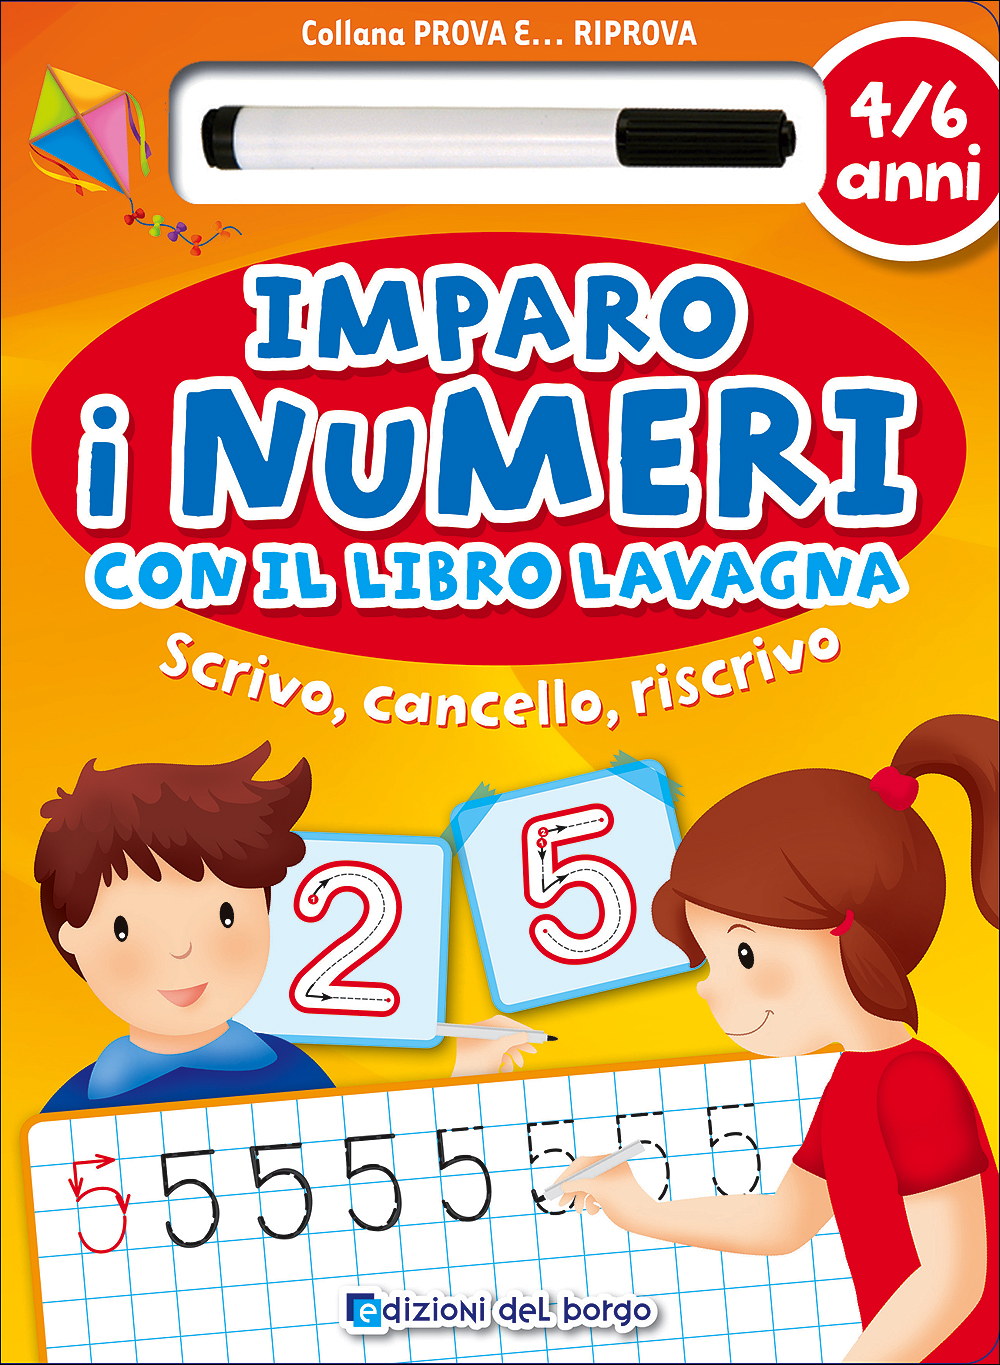 Imparo i numeri con il libro lavagna - 4/6 anni